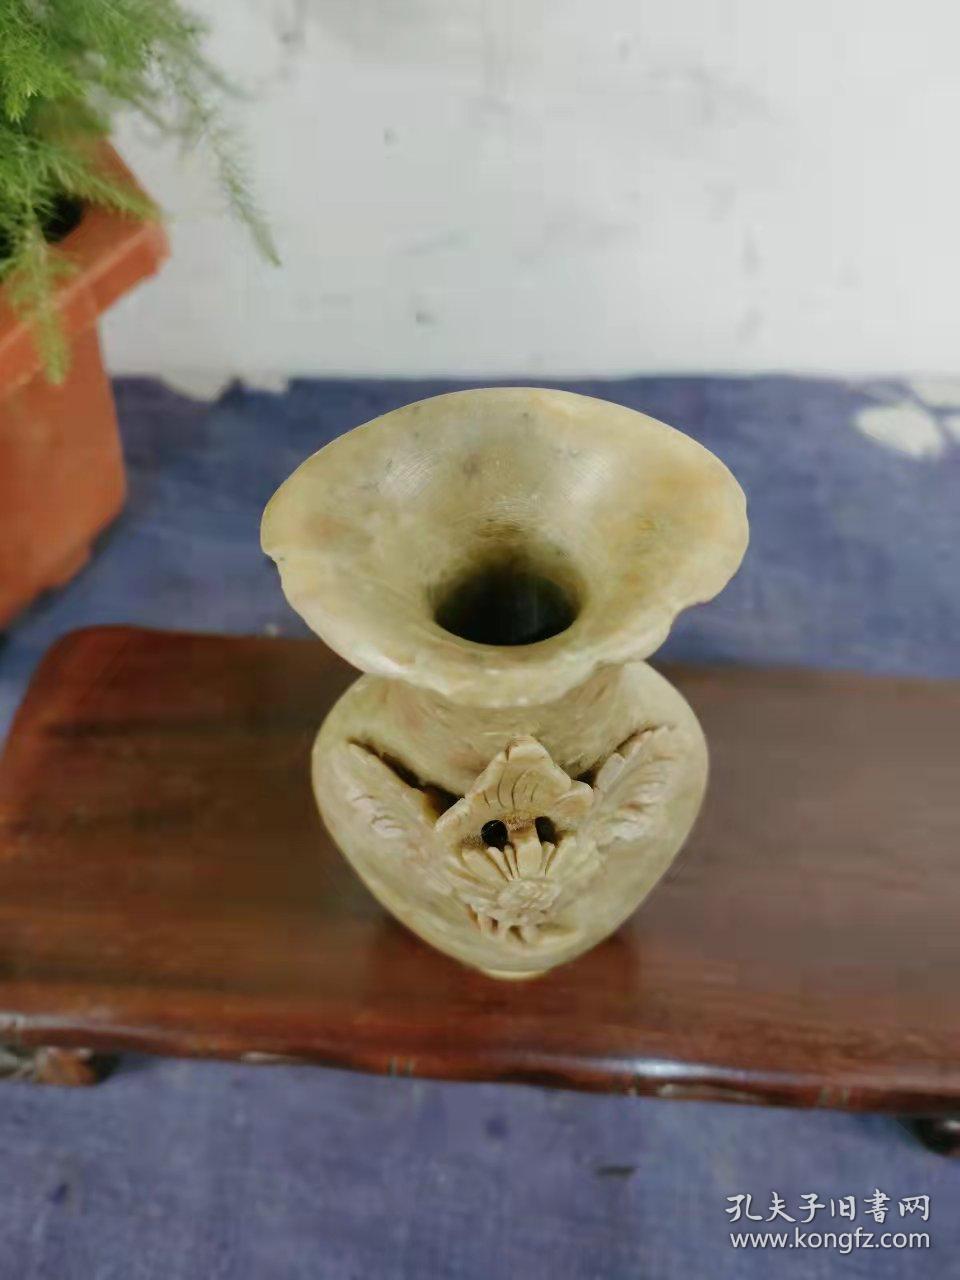 早期天然寿山石花瓶摆件一个。小夺天工，十分精美。陈设摆放很漂亮。天然保真寿山石。